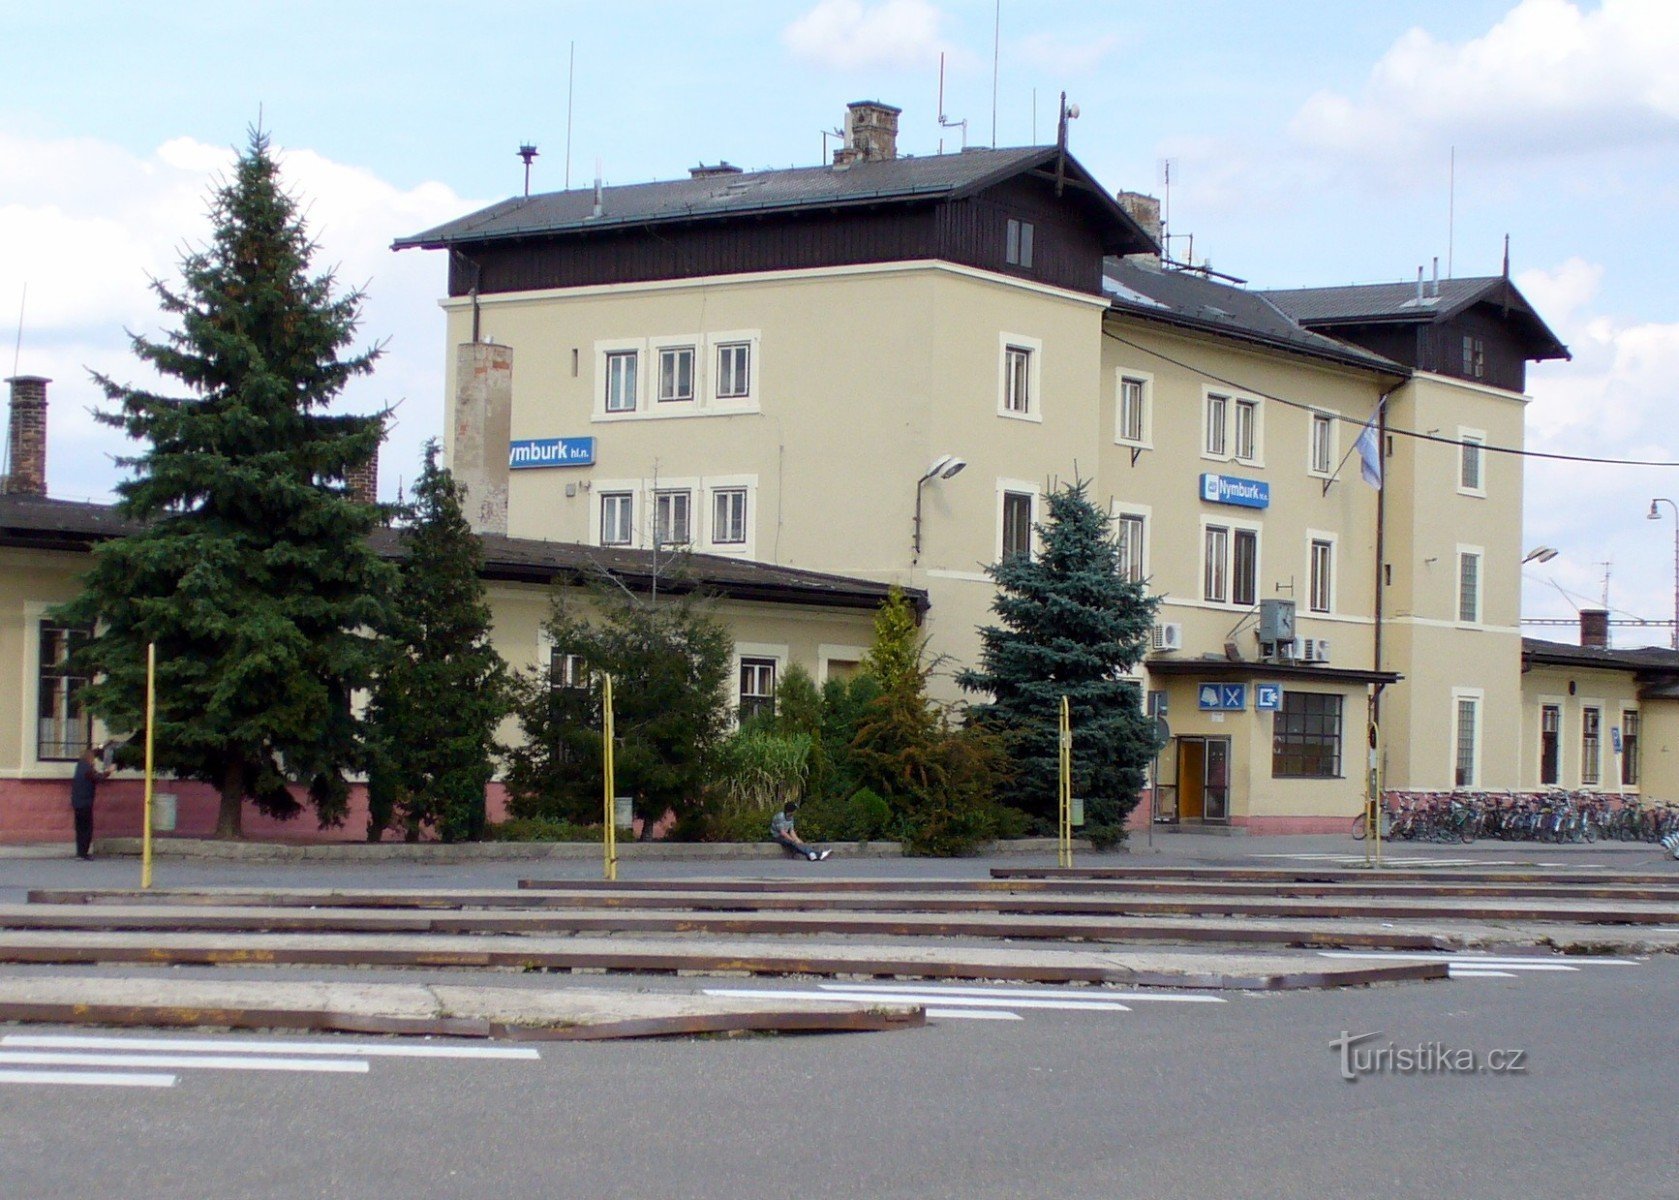 ČD Central Station (siden 1870)